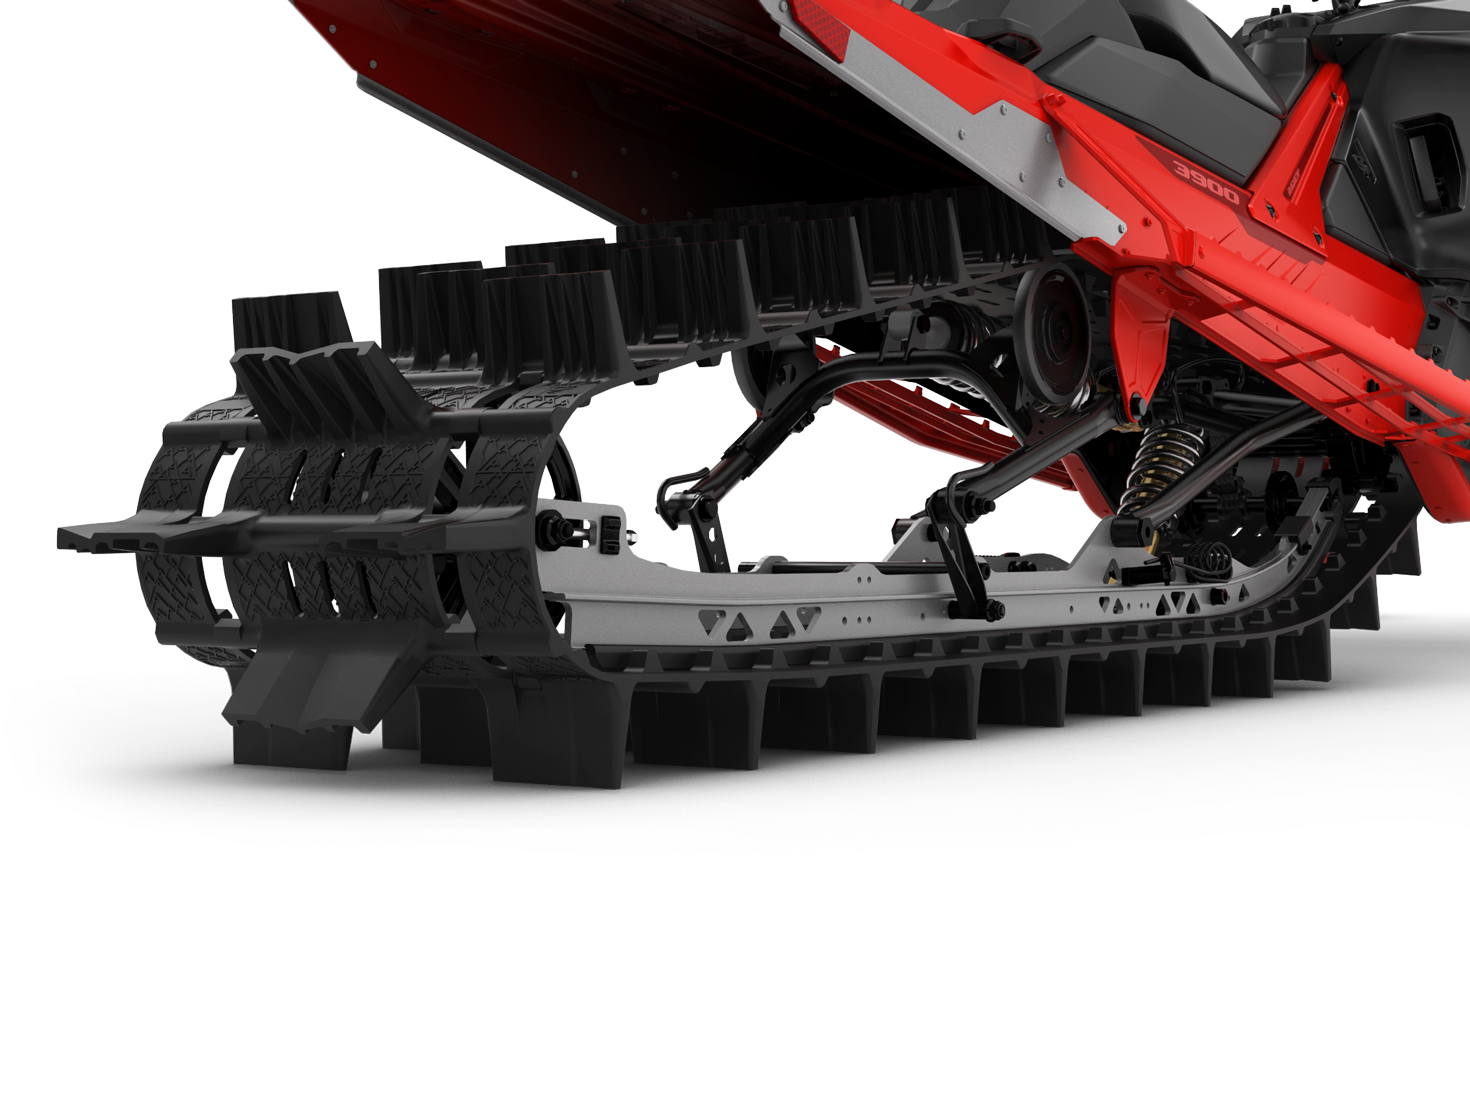 Lynx Shredder 381 mm wide track